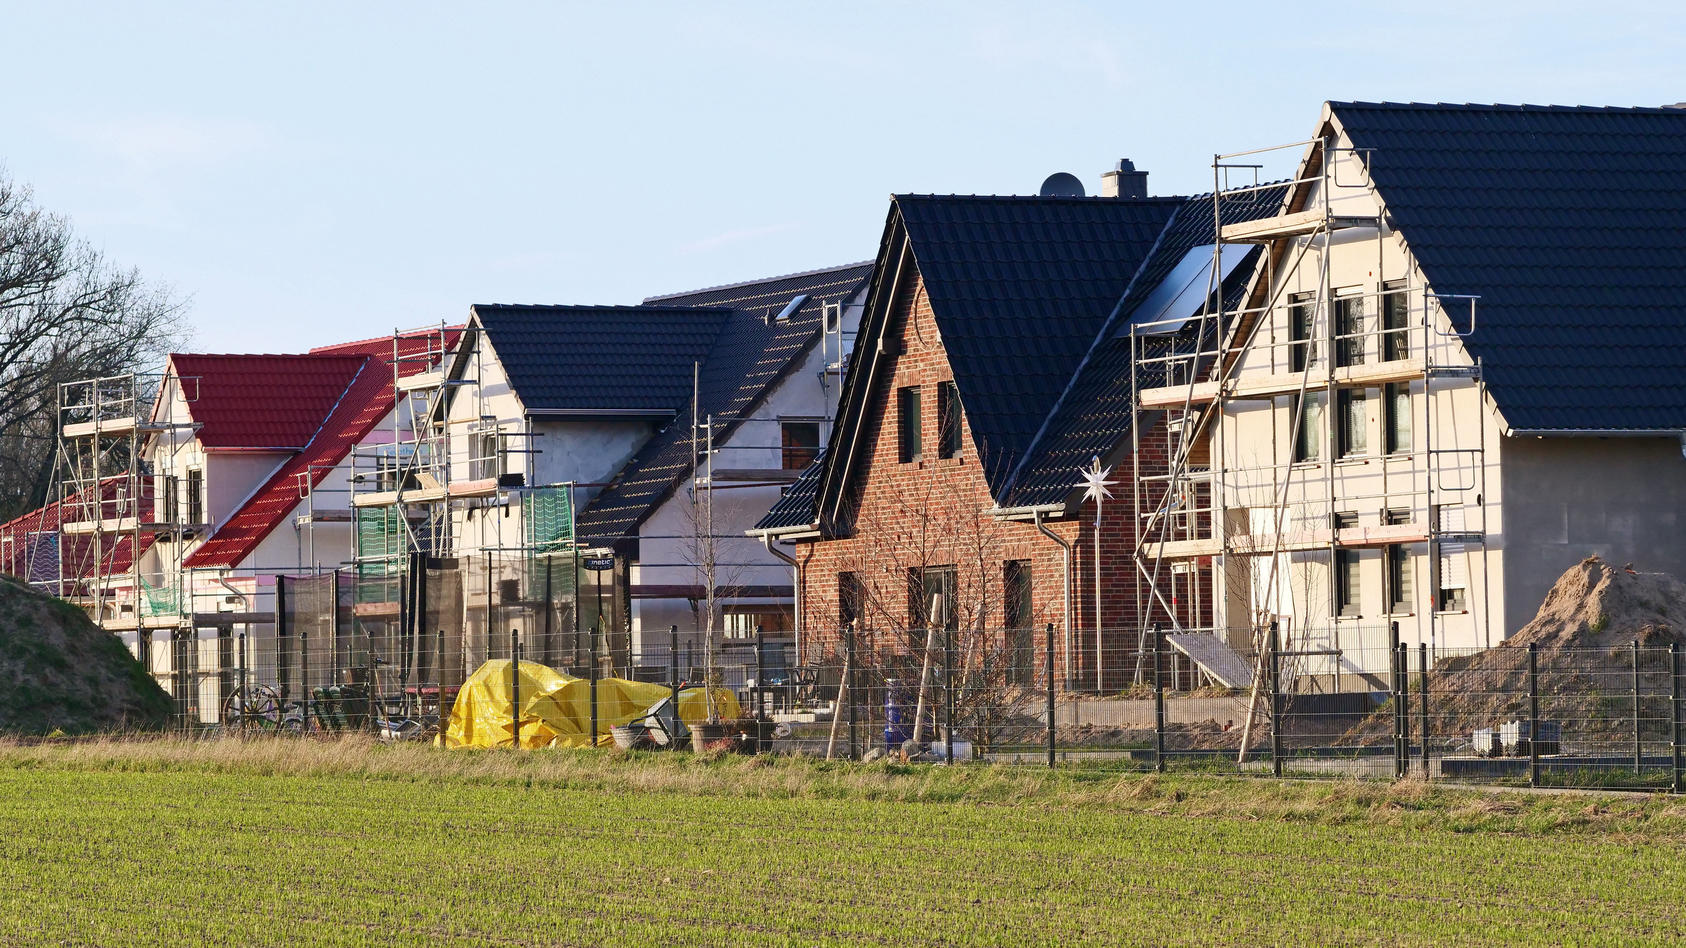 Einfamilienhaeuser sind im Bau an einem Feldrand von Grossbeeren in Brandenburg. Die Gegend gehoert noch zum Berliner Speckguertel. Dadurch sind in letzter Zeit die Preise fuer Haeuser und Wohnungen hier deutlich gestiegen.